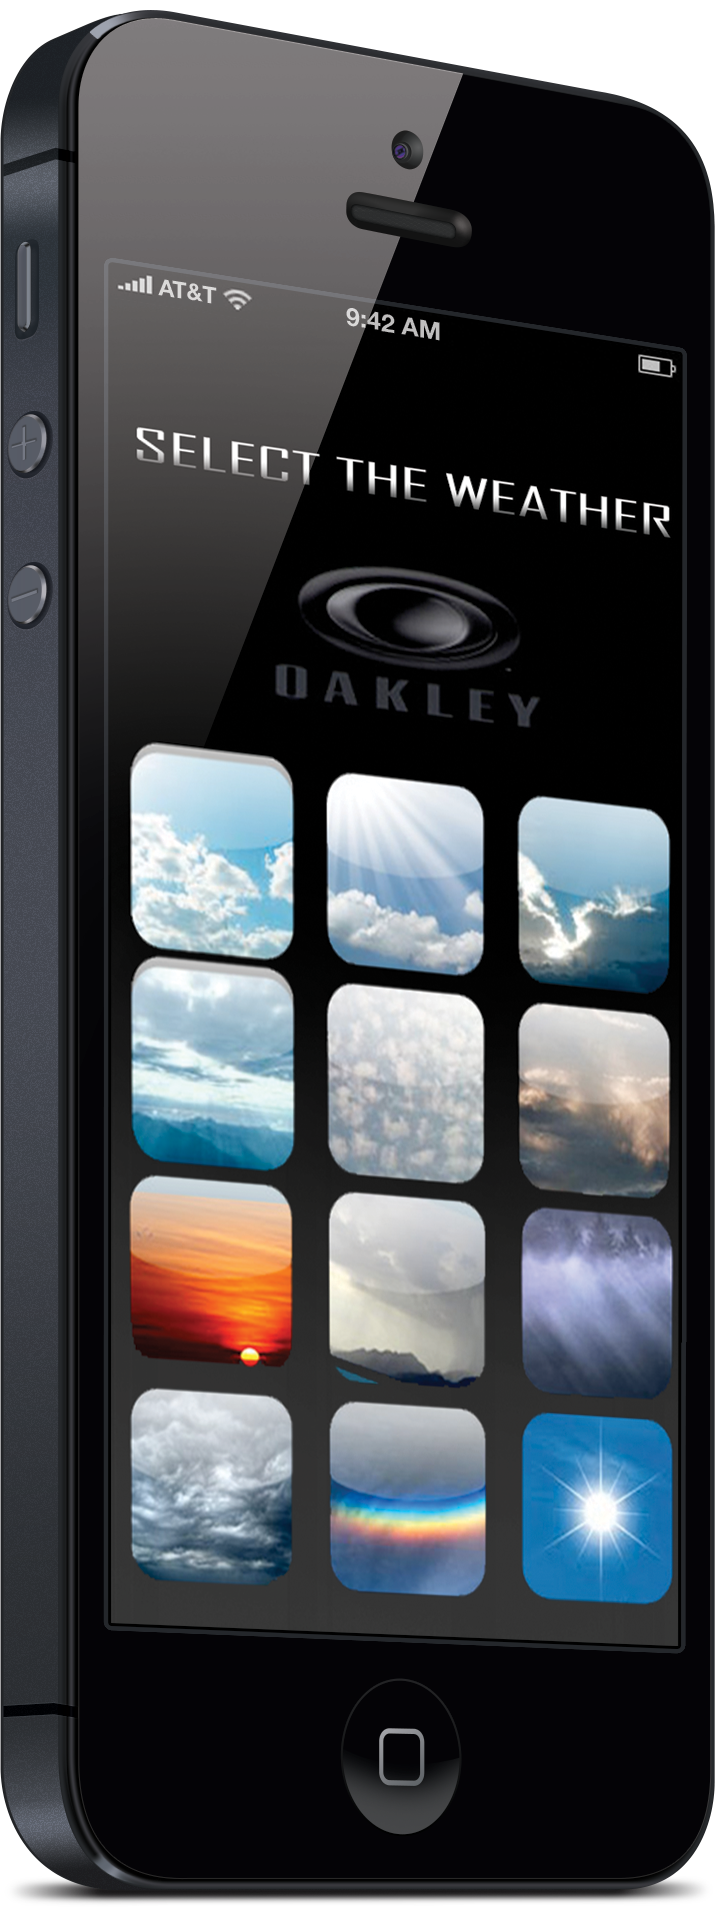 oakley_app3